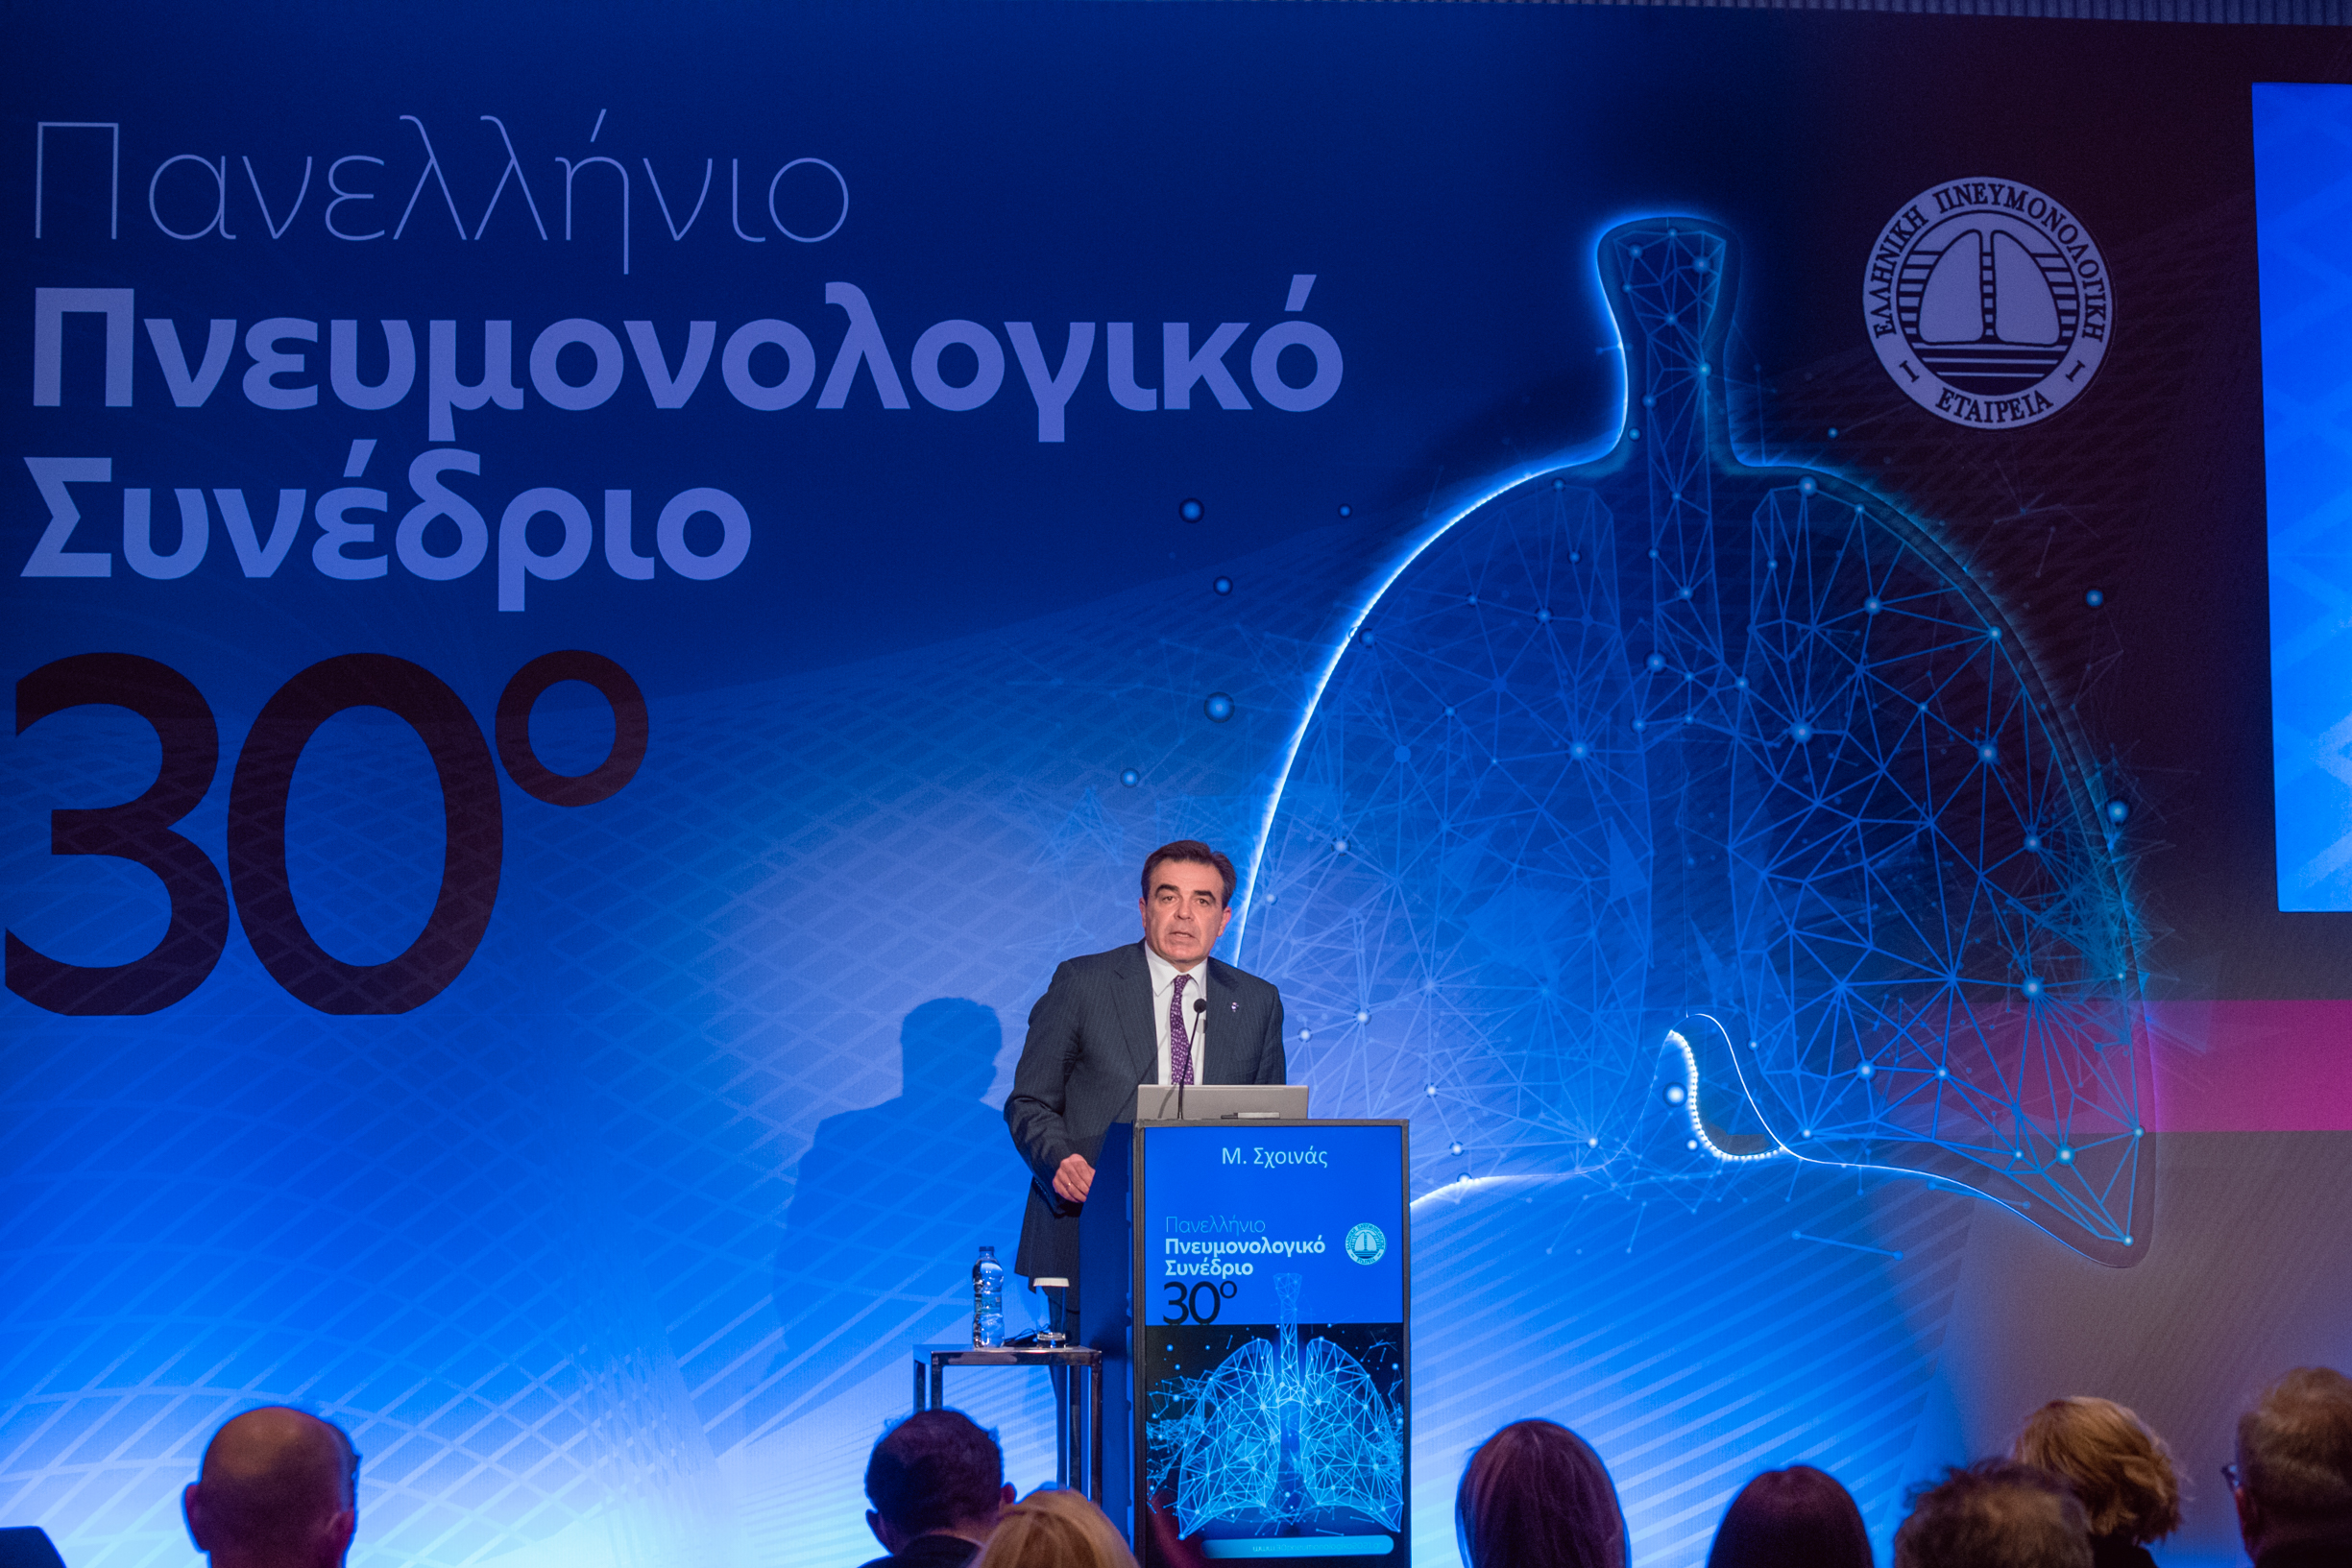 Μ. Σχοινάς: “Οι μάχες που δίνουν οι Έλληνες πνευμονολόγοι στο μέτωπο της πανδημίας είναι πηγή έμπνευσης για όλους μας